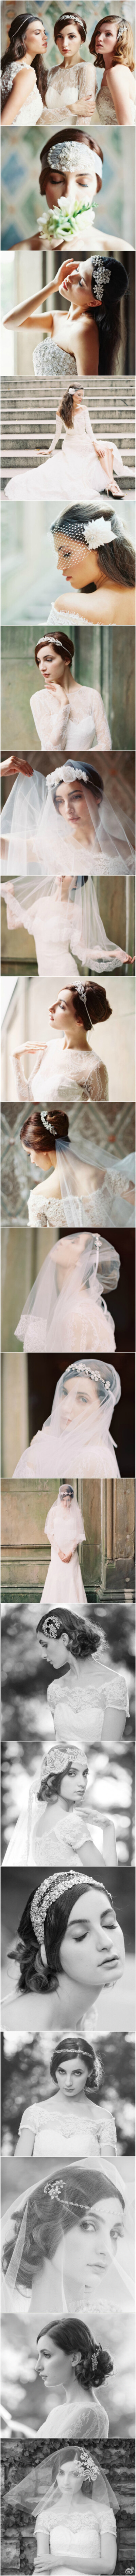 【Enchanted Atelier FW 2014 】设计师Liv Hart创建的Enchanted Atelier专为搭配婚纱而设计头饰等配件，各式各样的珍珠，晶莹剔透的水晶，充满梦幻的薄纱，还有浪漫的绸缎和丝绸，带来了自然清新，优雅甜美的梦幻风…